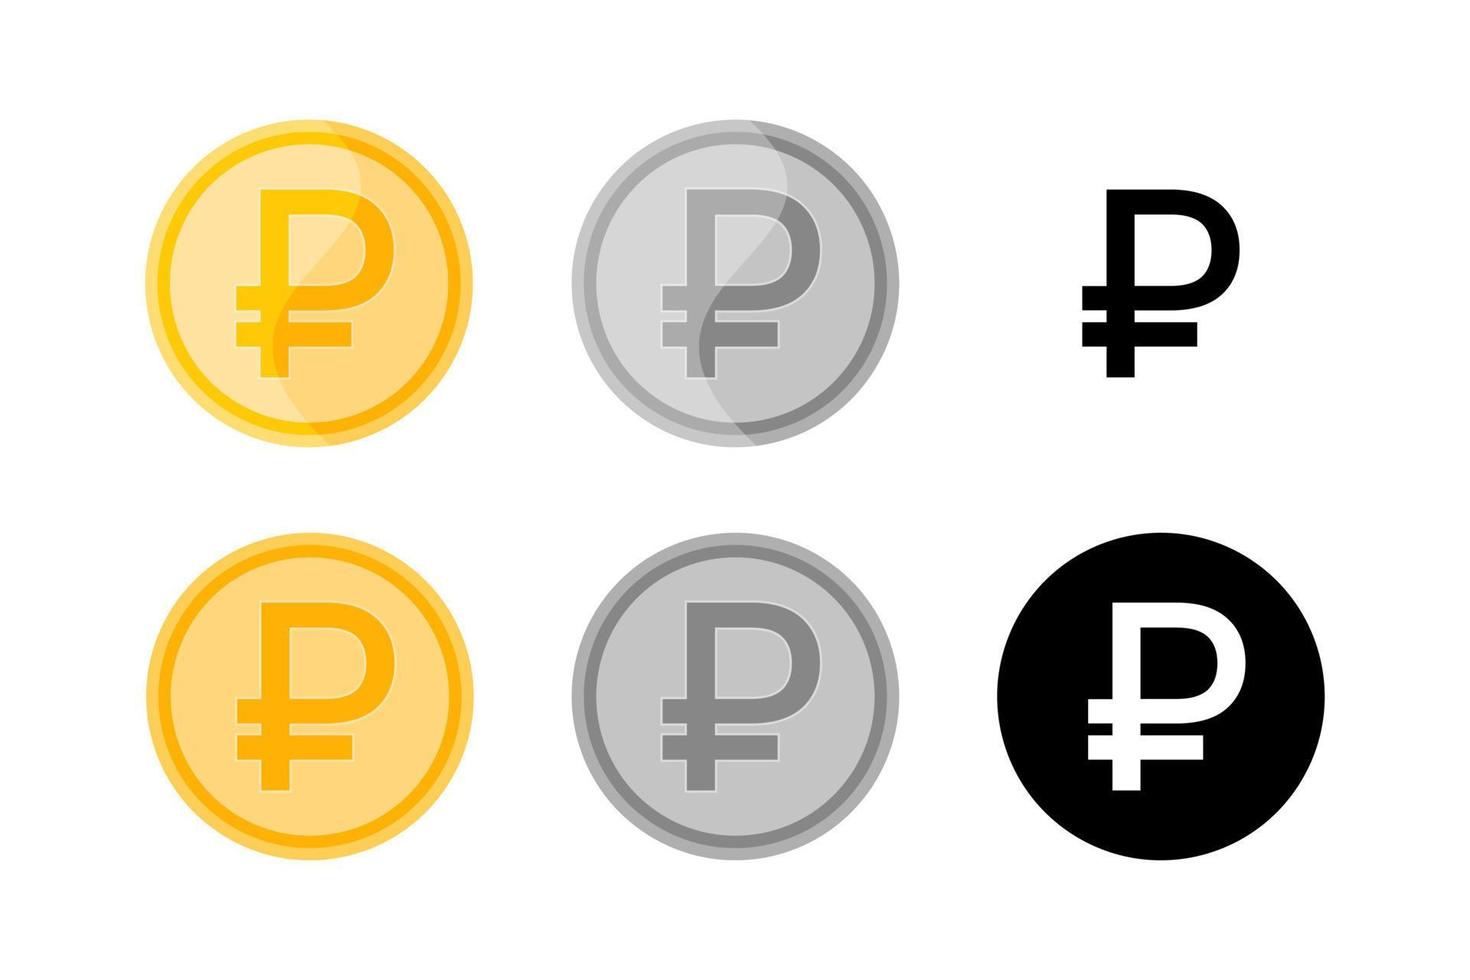 ryska rubeln. mynt ikoner isolerade. vektor uppsättning gyllene, silver och monokroma rubel symboler på vit bakgrund. platta designelement